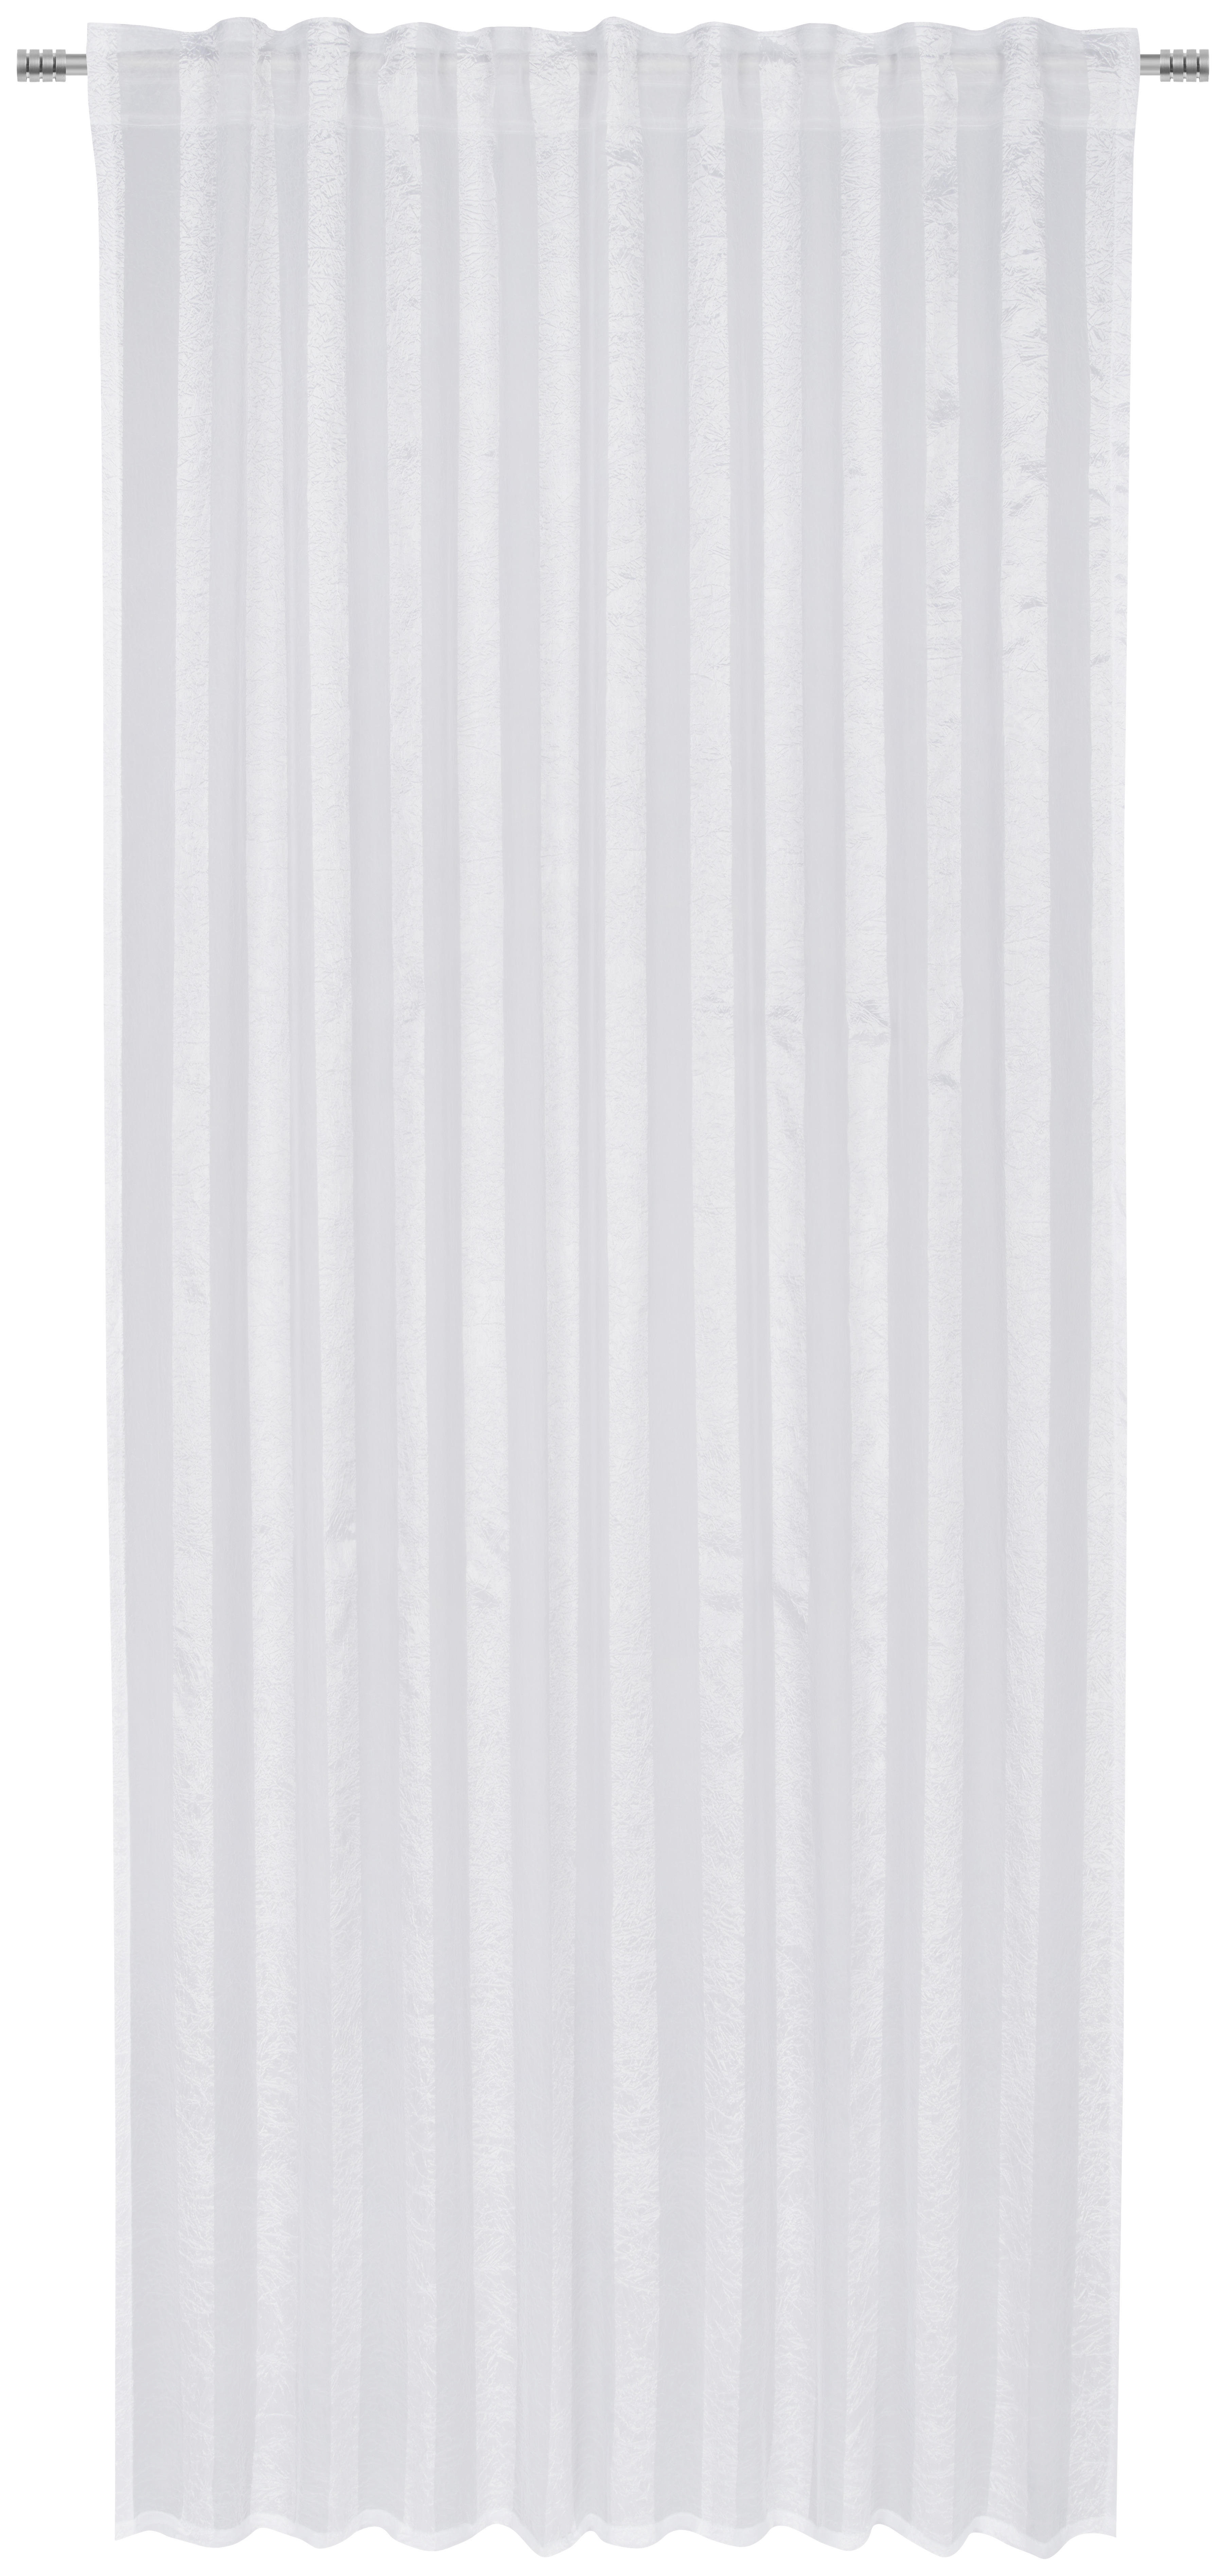 FERTIGVORHANG CANTERBURY transparent 135/245 cm   - Weiß, Basics, Textil (135/245cm) - Esposa